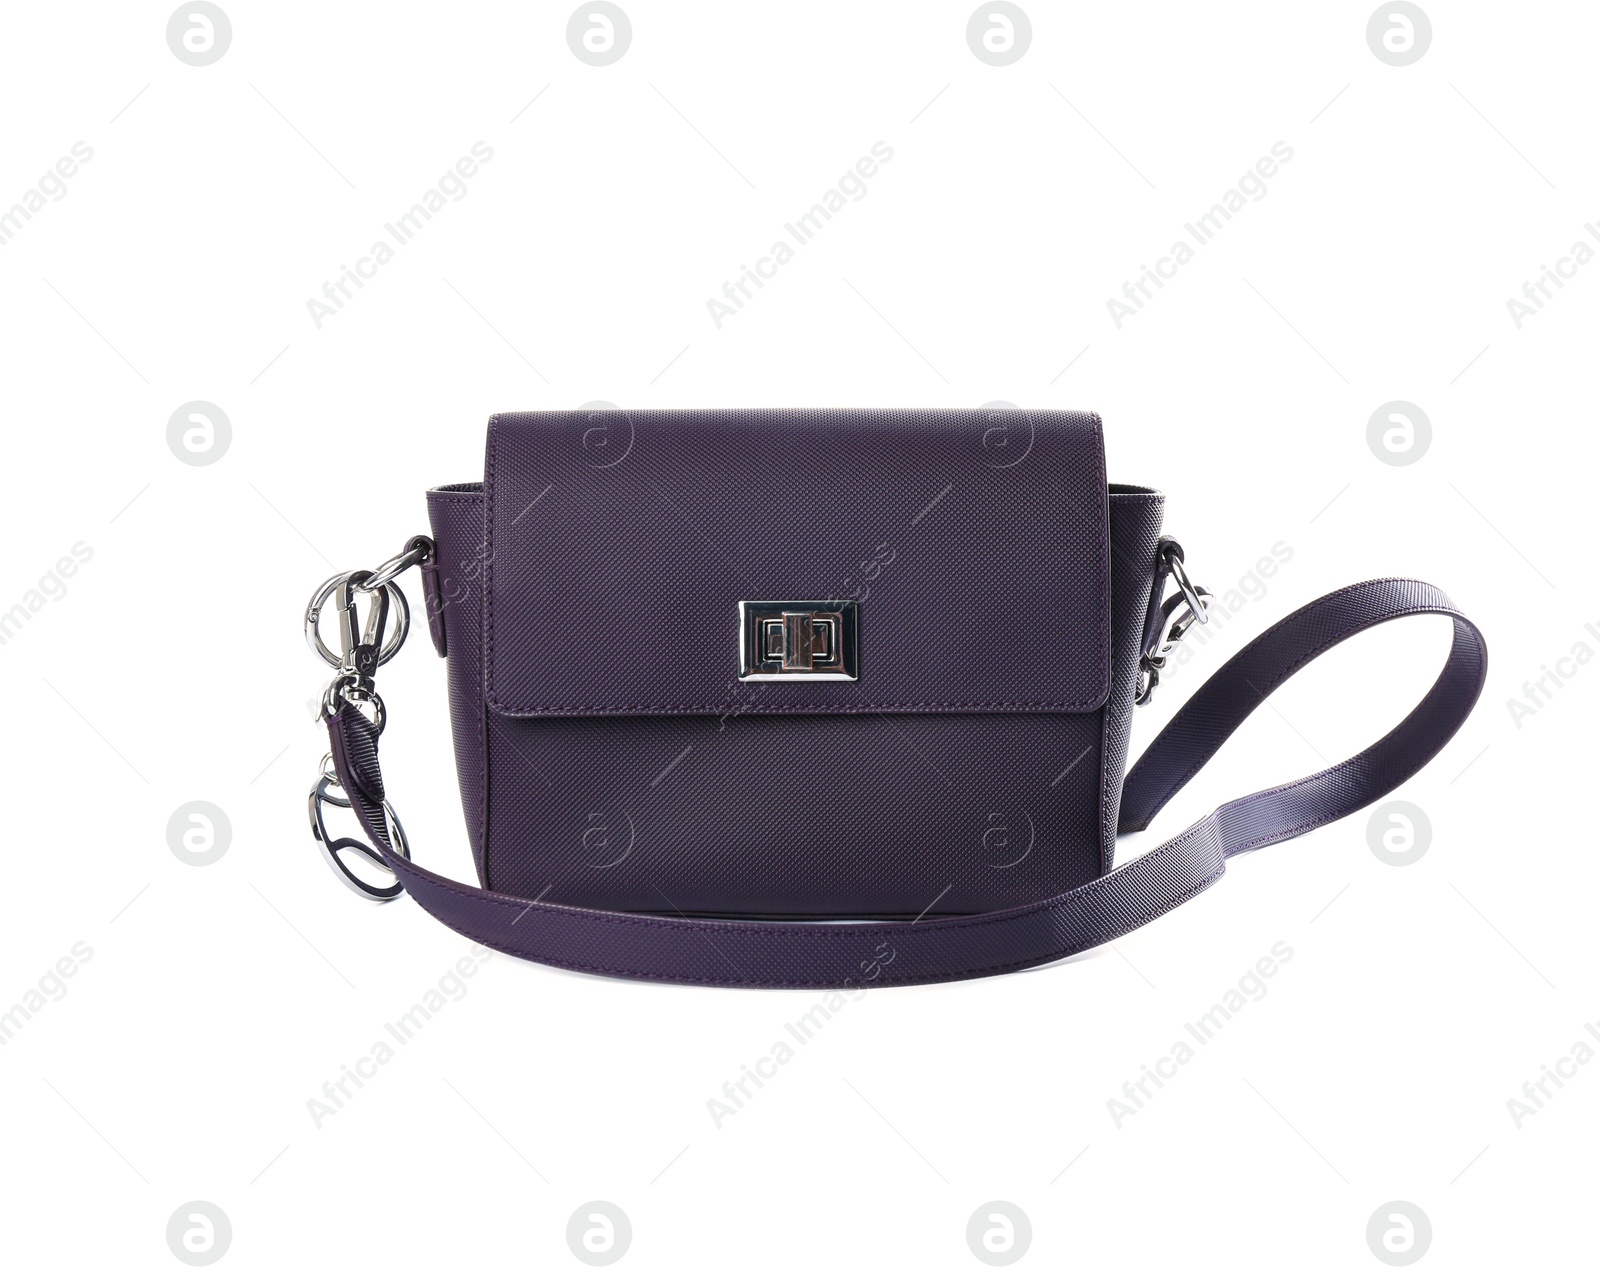 Photo of Stylish purple leather bag isolated on white